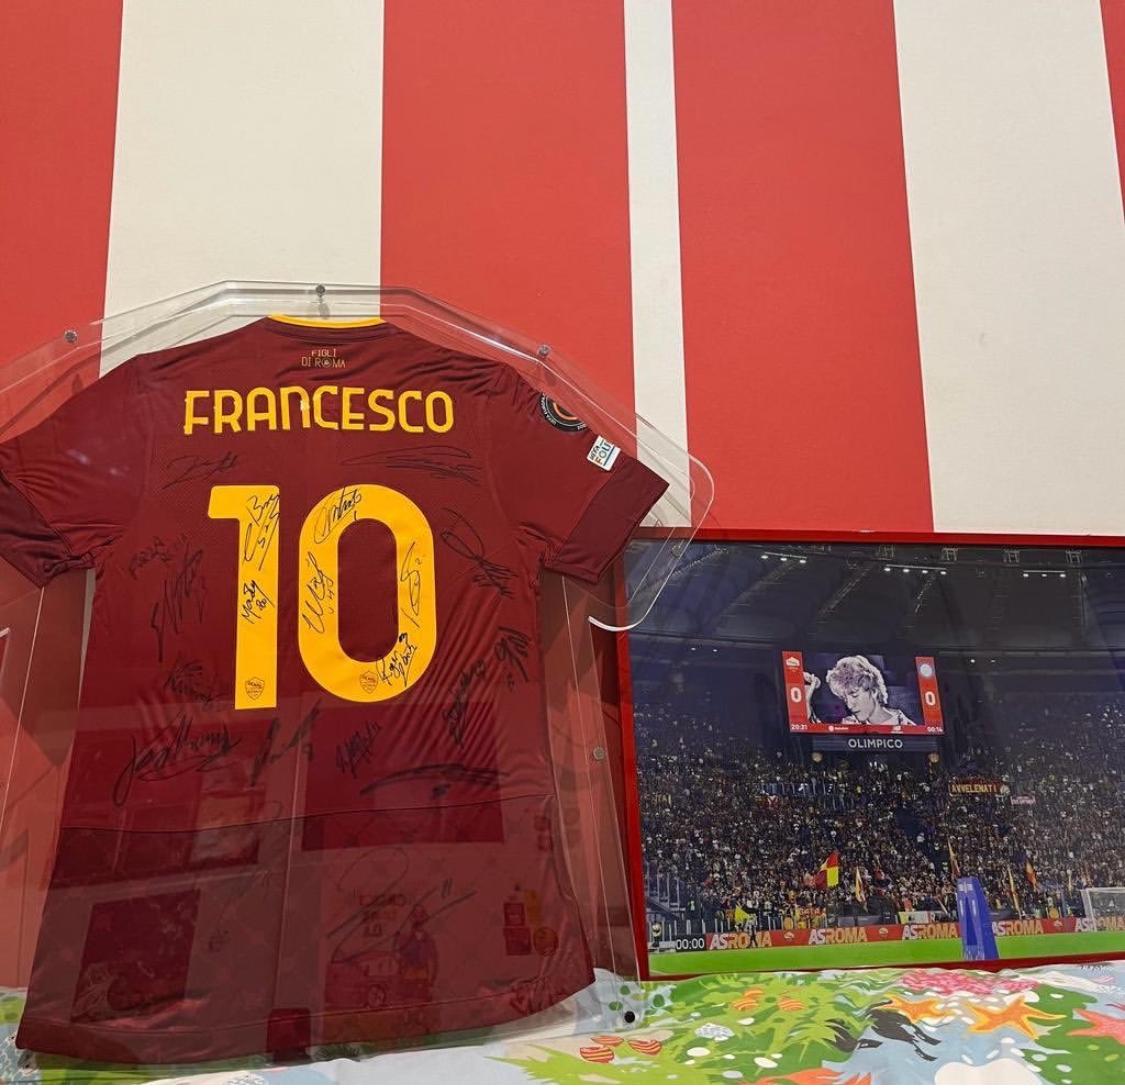 La maglia che la Roma ha donato alla famiglia di Francesco Valdiserri